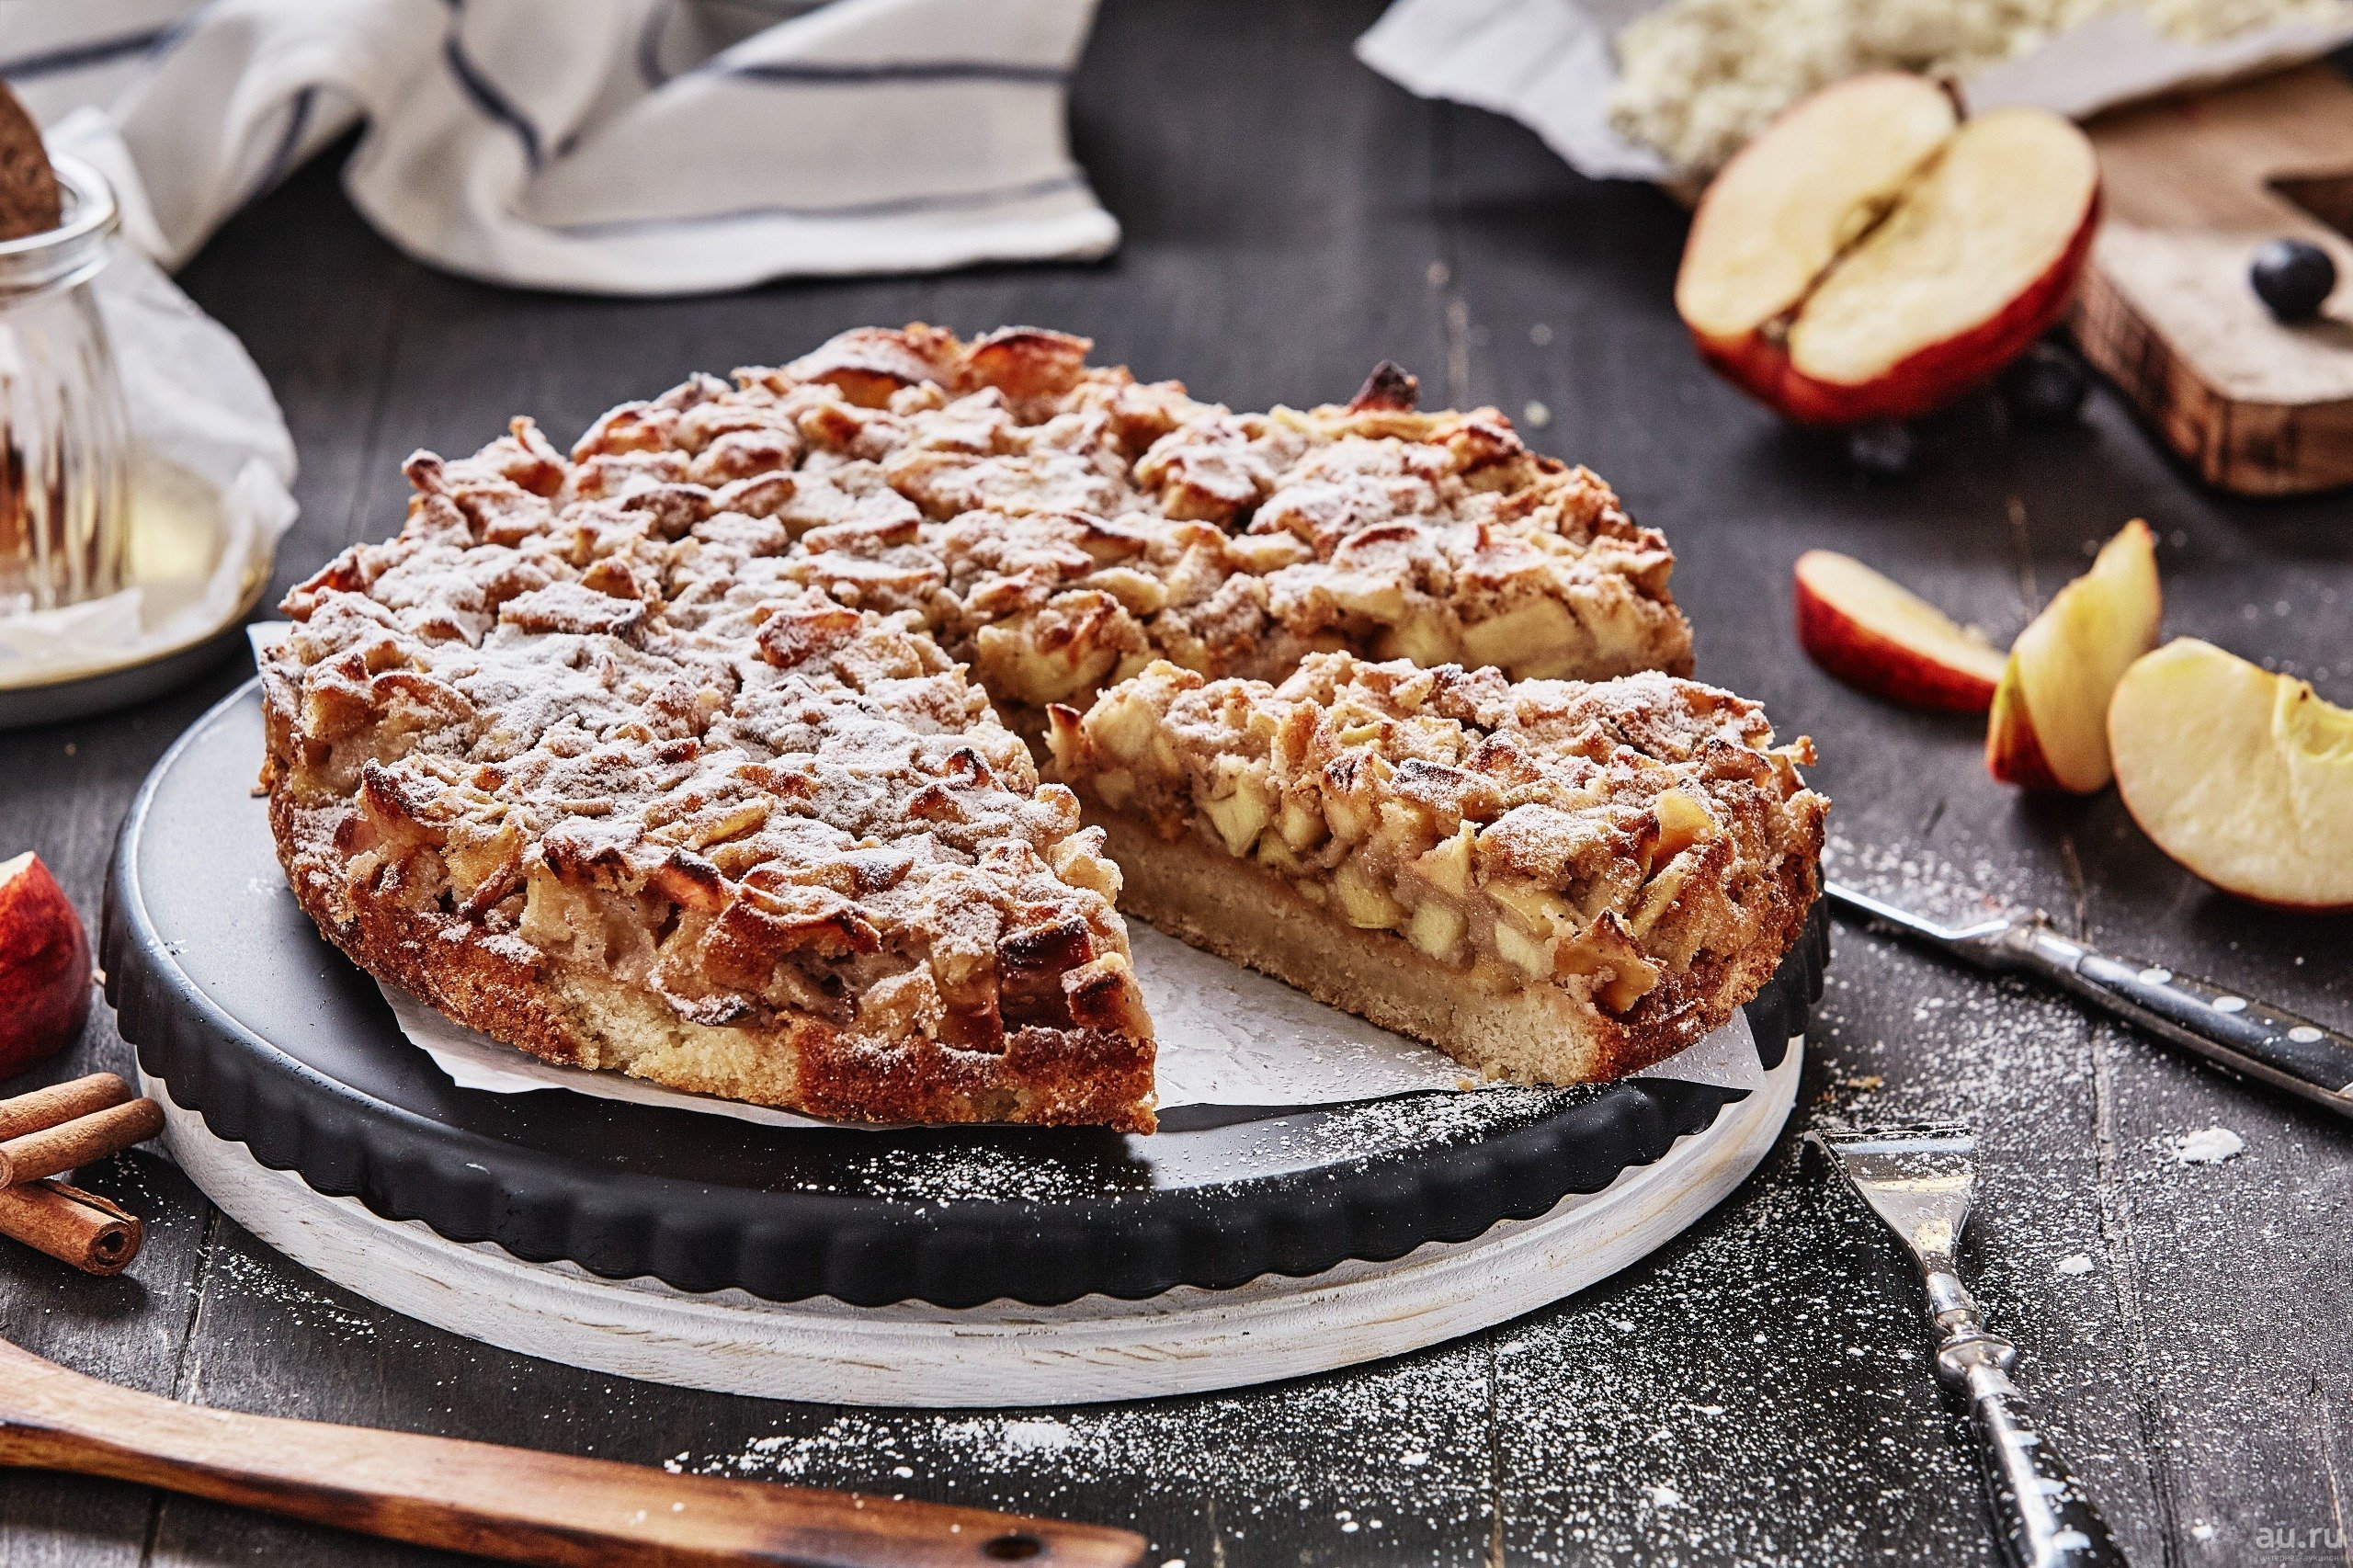 Пекти. Шарлотка американский пирог. Американский пирог яблочный пирог. Эппл Пай пирог. Apple pie (яблочный пирог).